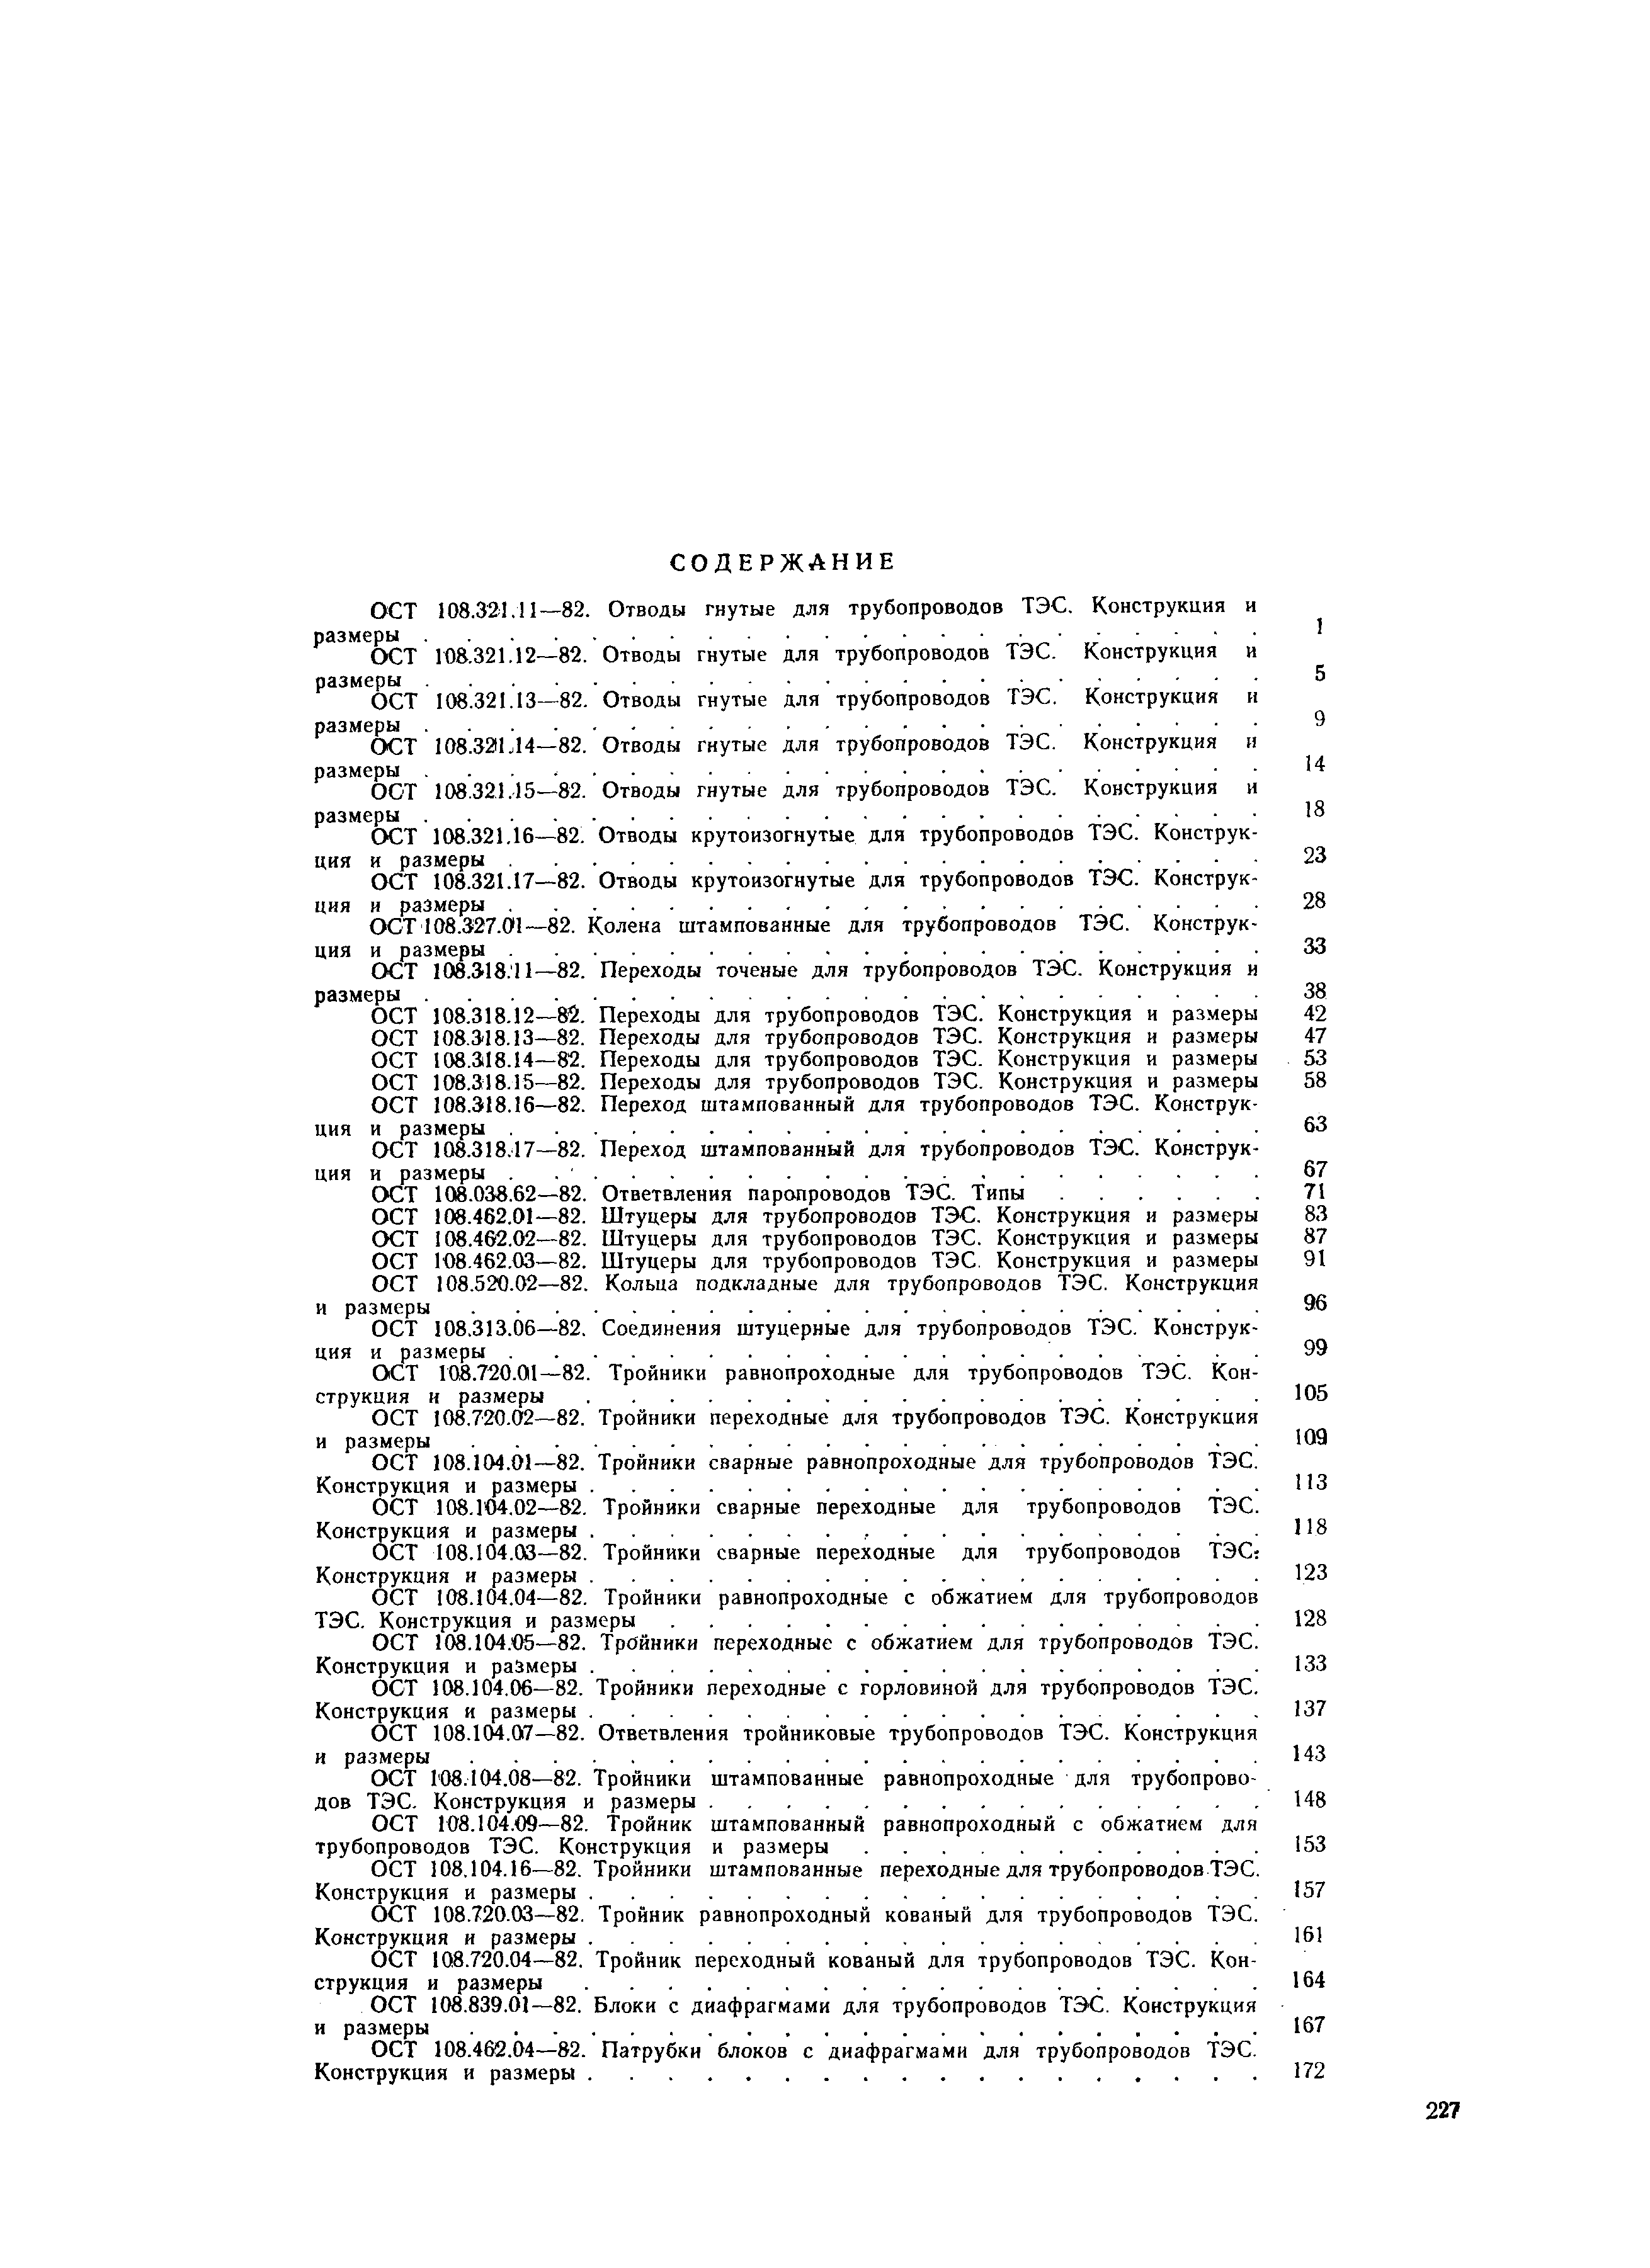 ОСТ 108.724.01-82